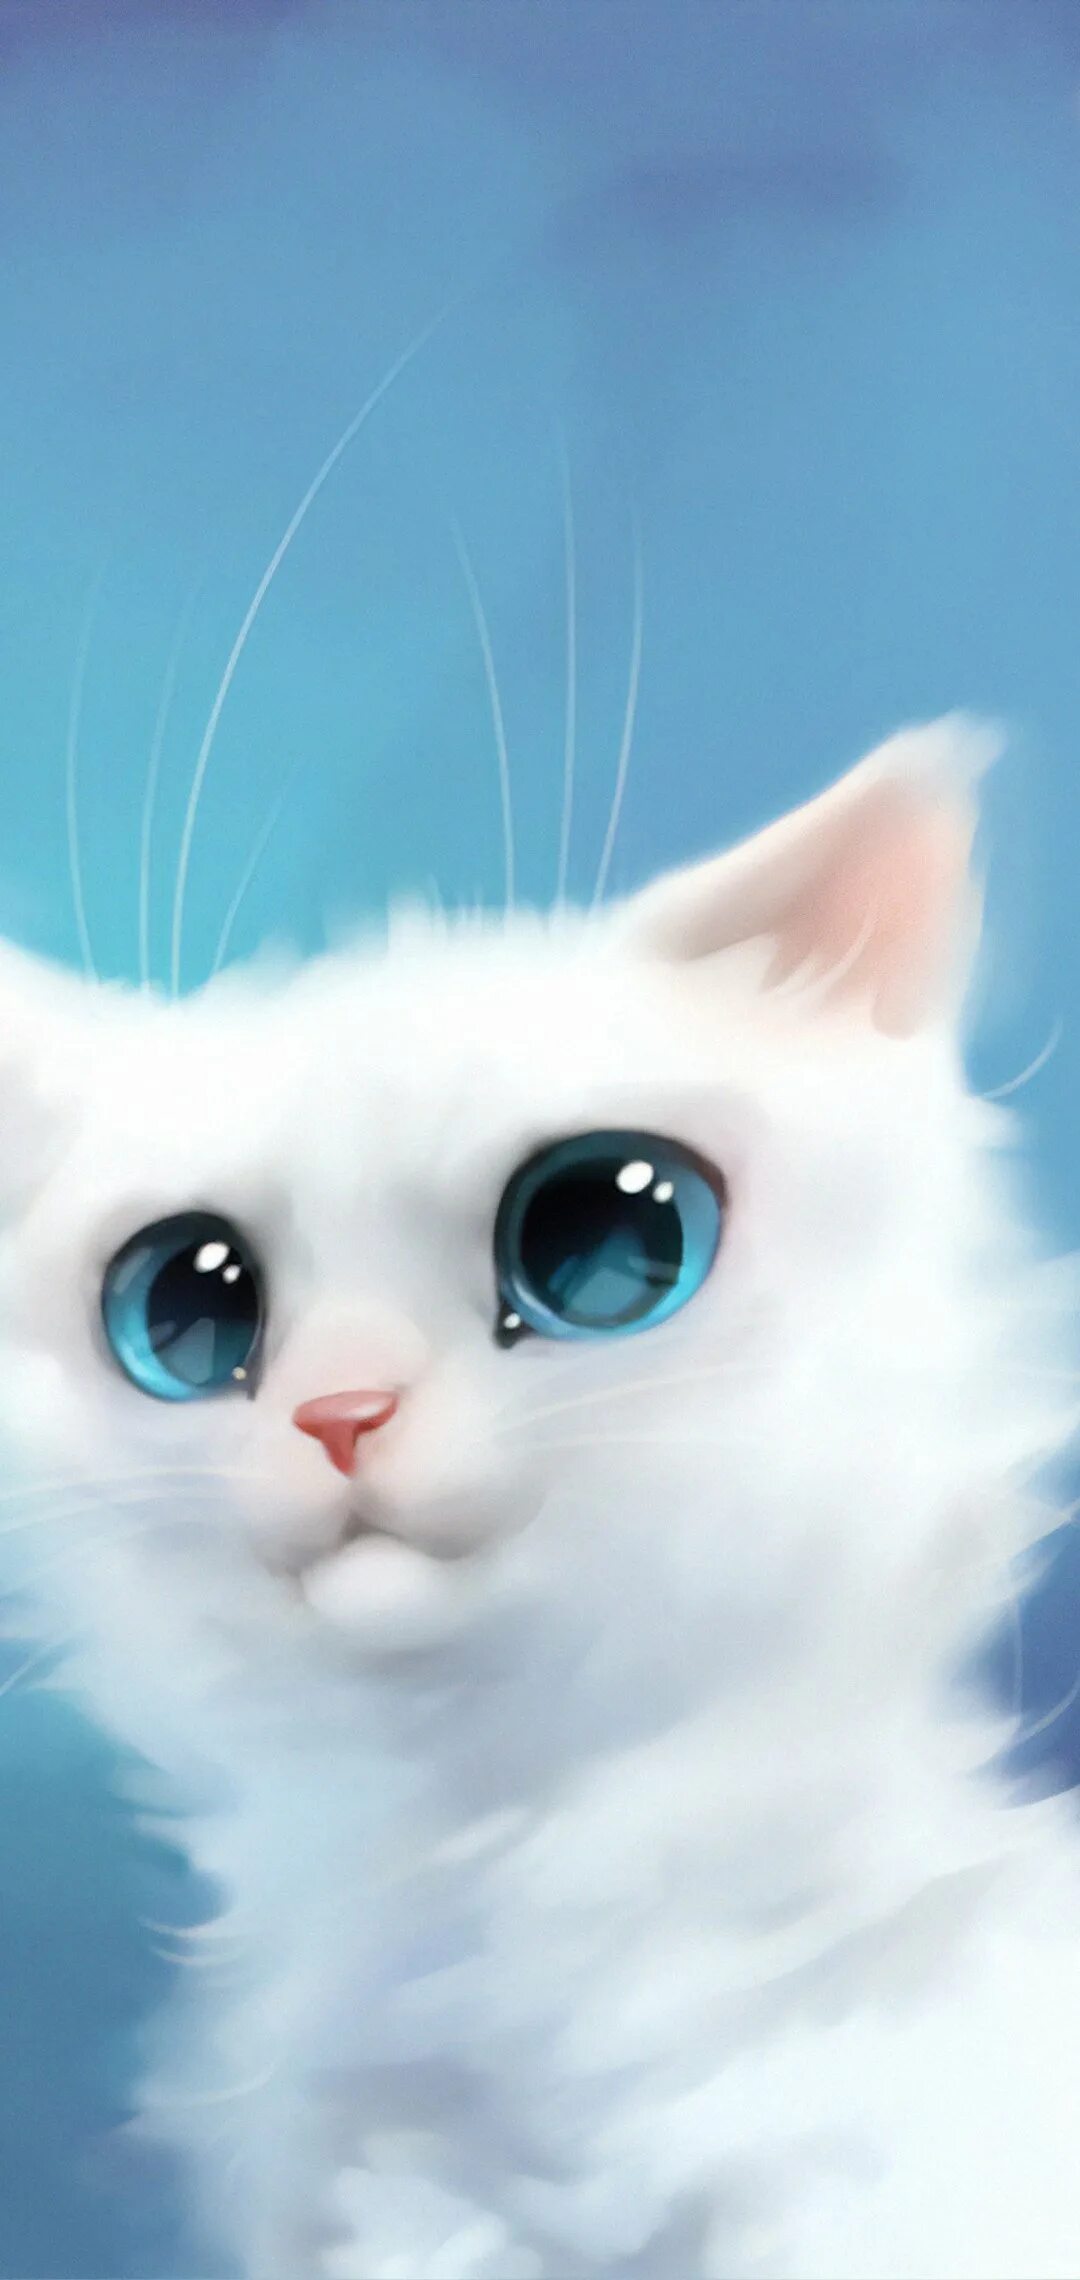 Обои на телефон красивых котиков. Милые котики. Кошка с голубыми глазами. Аватарки с котиками. Котик на синем фоне.